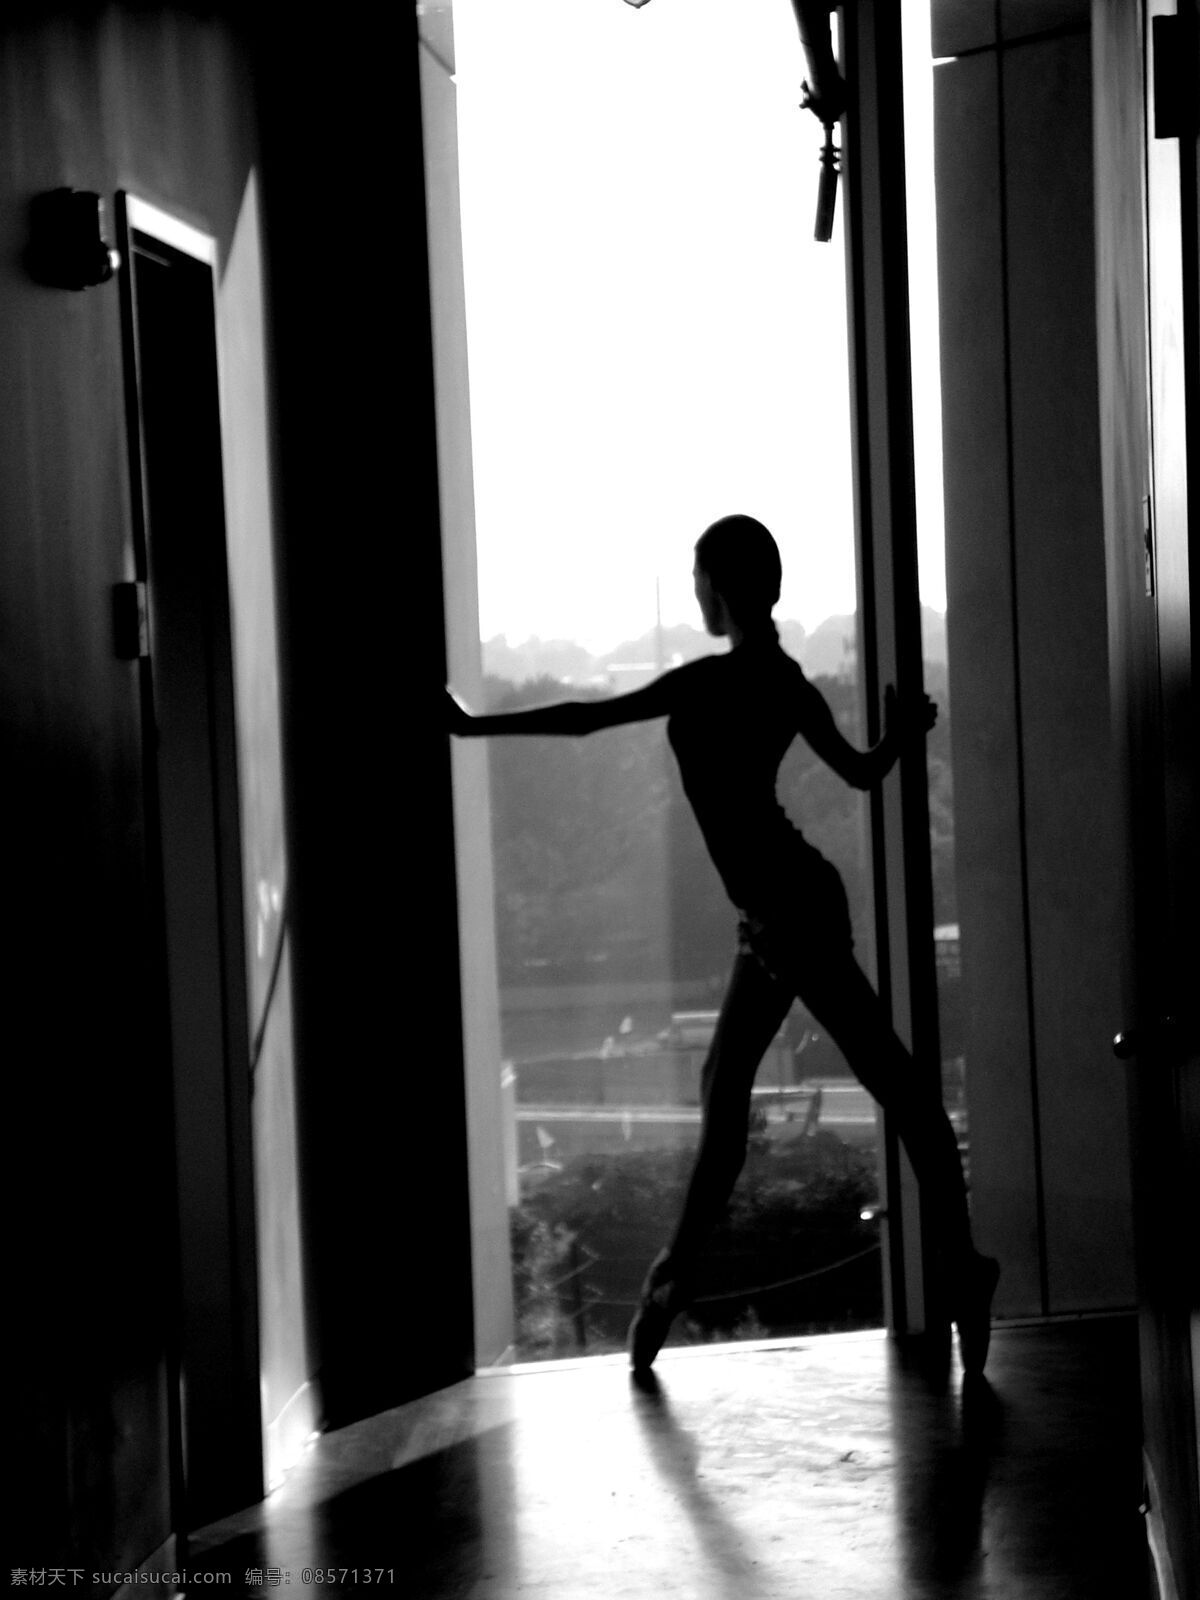 舞蹈 人物图片 芭蕾 高雅 黑白 室内 文化艺术 舞蹈人物 舞者 舞姿 舞鞋 优雅 造型 舞蹈音乐 psd源文件